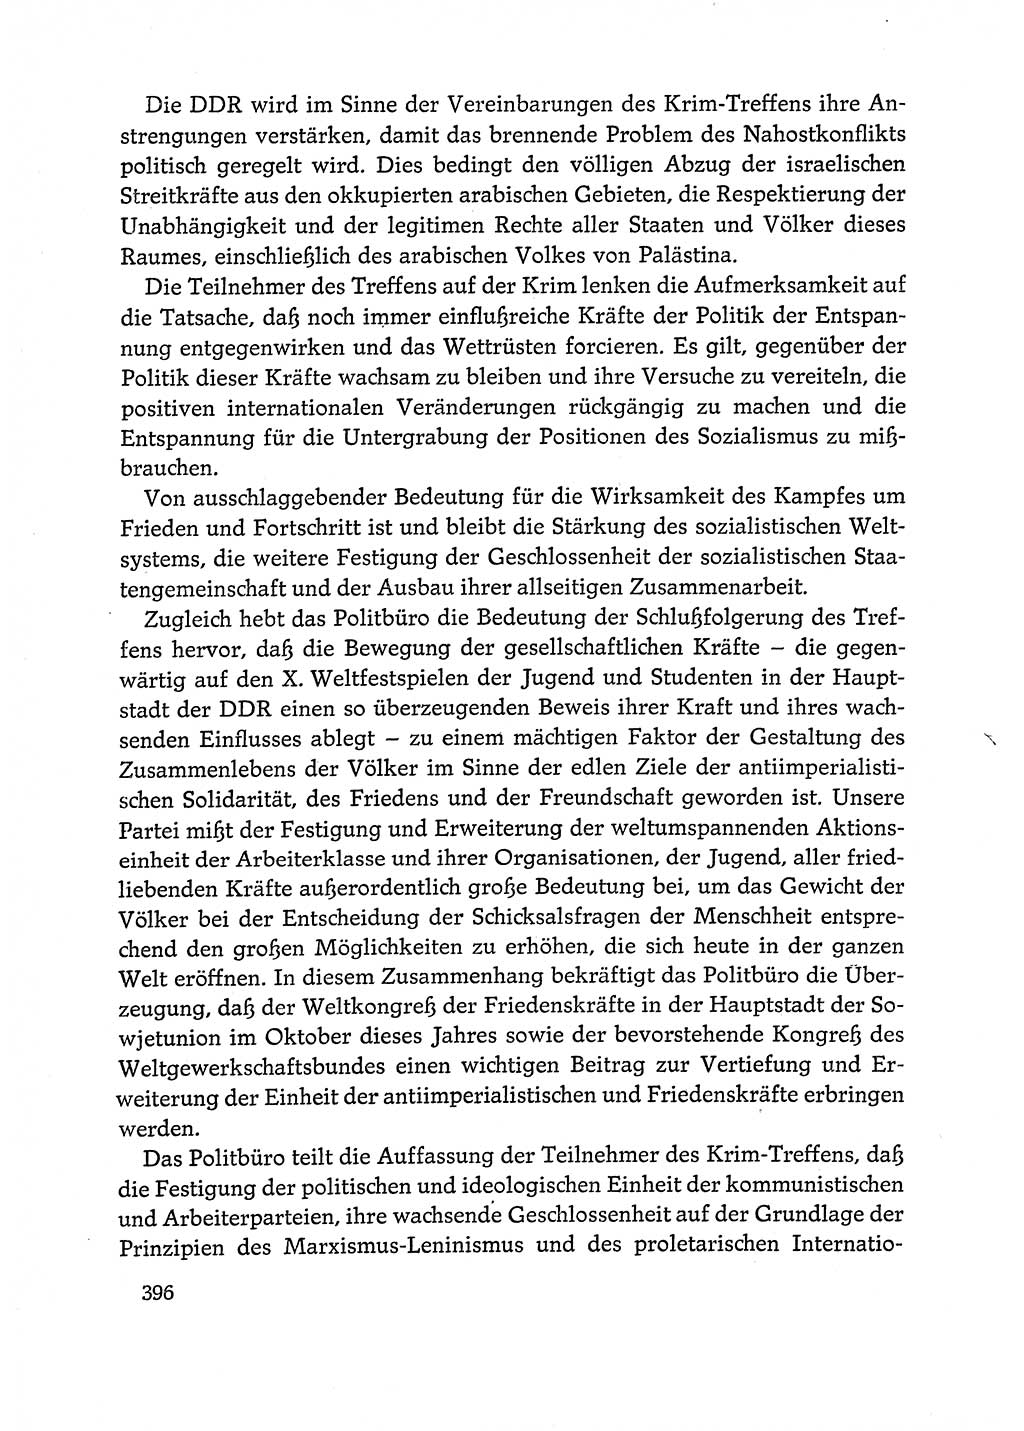 Dokumente der Sozialistischen Einheitspartei Deutschlands (SED) [Deutsche Demokratische Republik (DDR)] 1972-1973, Seite 396 (Dok. SED DDR 1972-1973, S. 396)